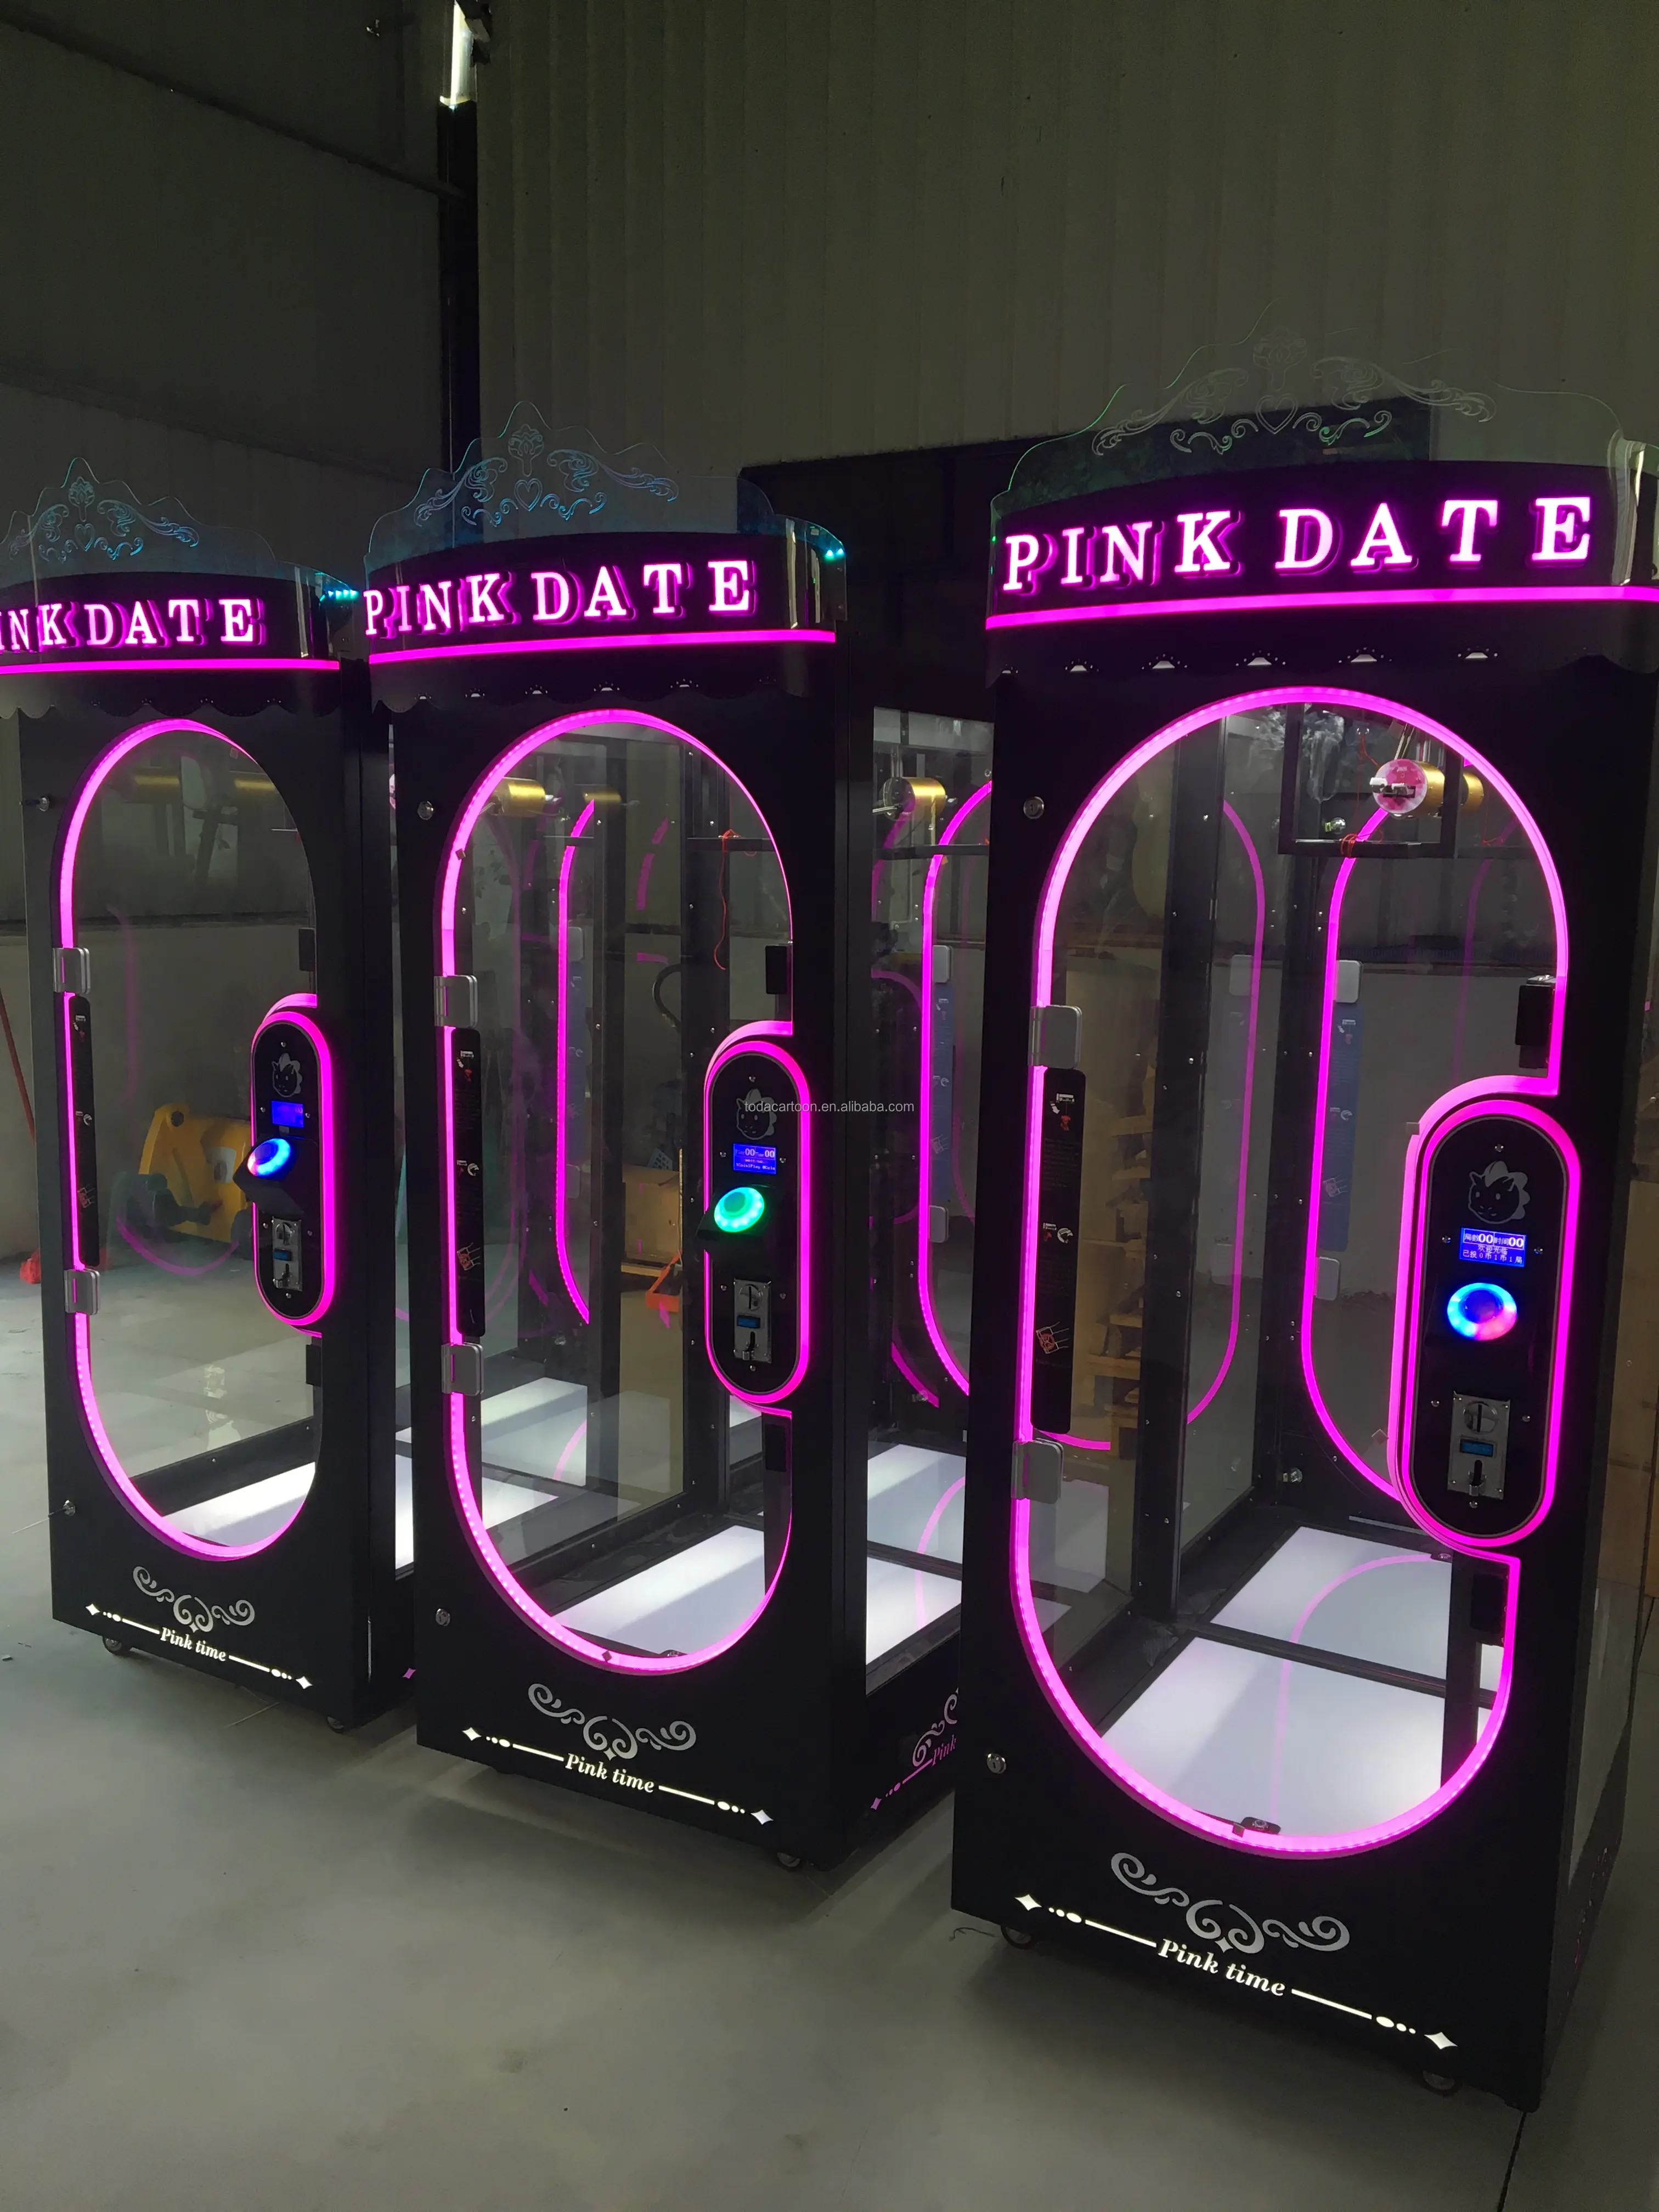 Mesin Game Arcade Yang Dioperasikan dengan Koin, Mesin Penjual Otomatis Memotong Hadiah Mesin Permainan Tanggal Merah Muda